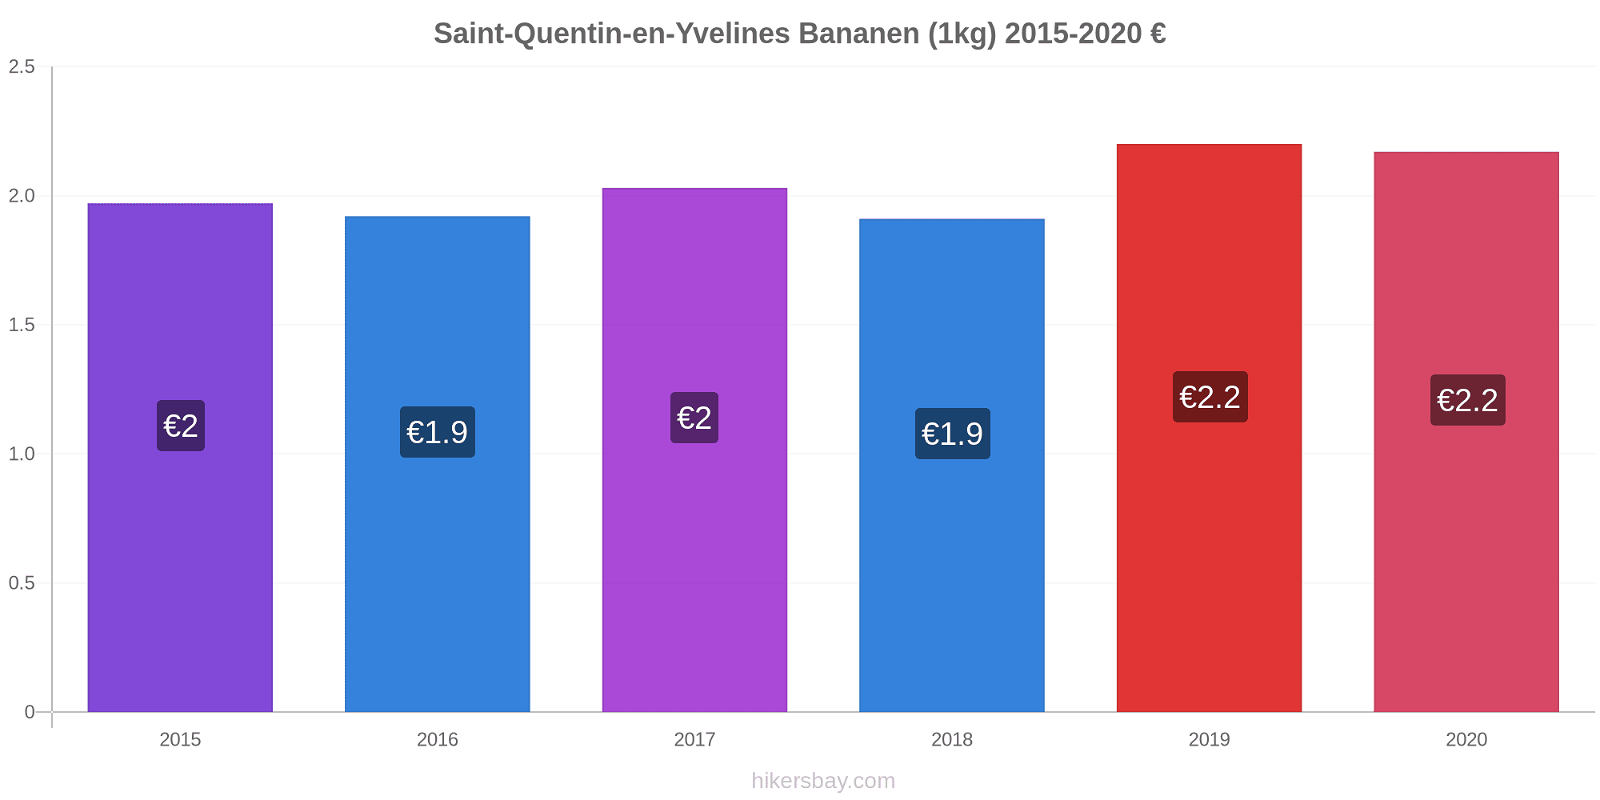 Saint-Quentin-en-Yvelines prijswijzigingen Banaan (1kg) hikersbay.com